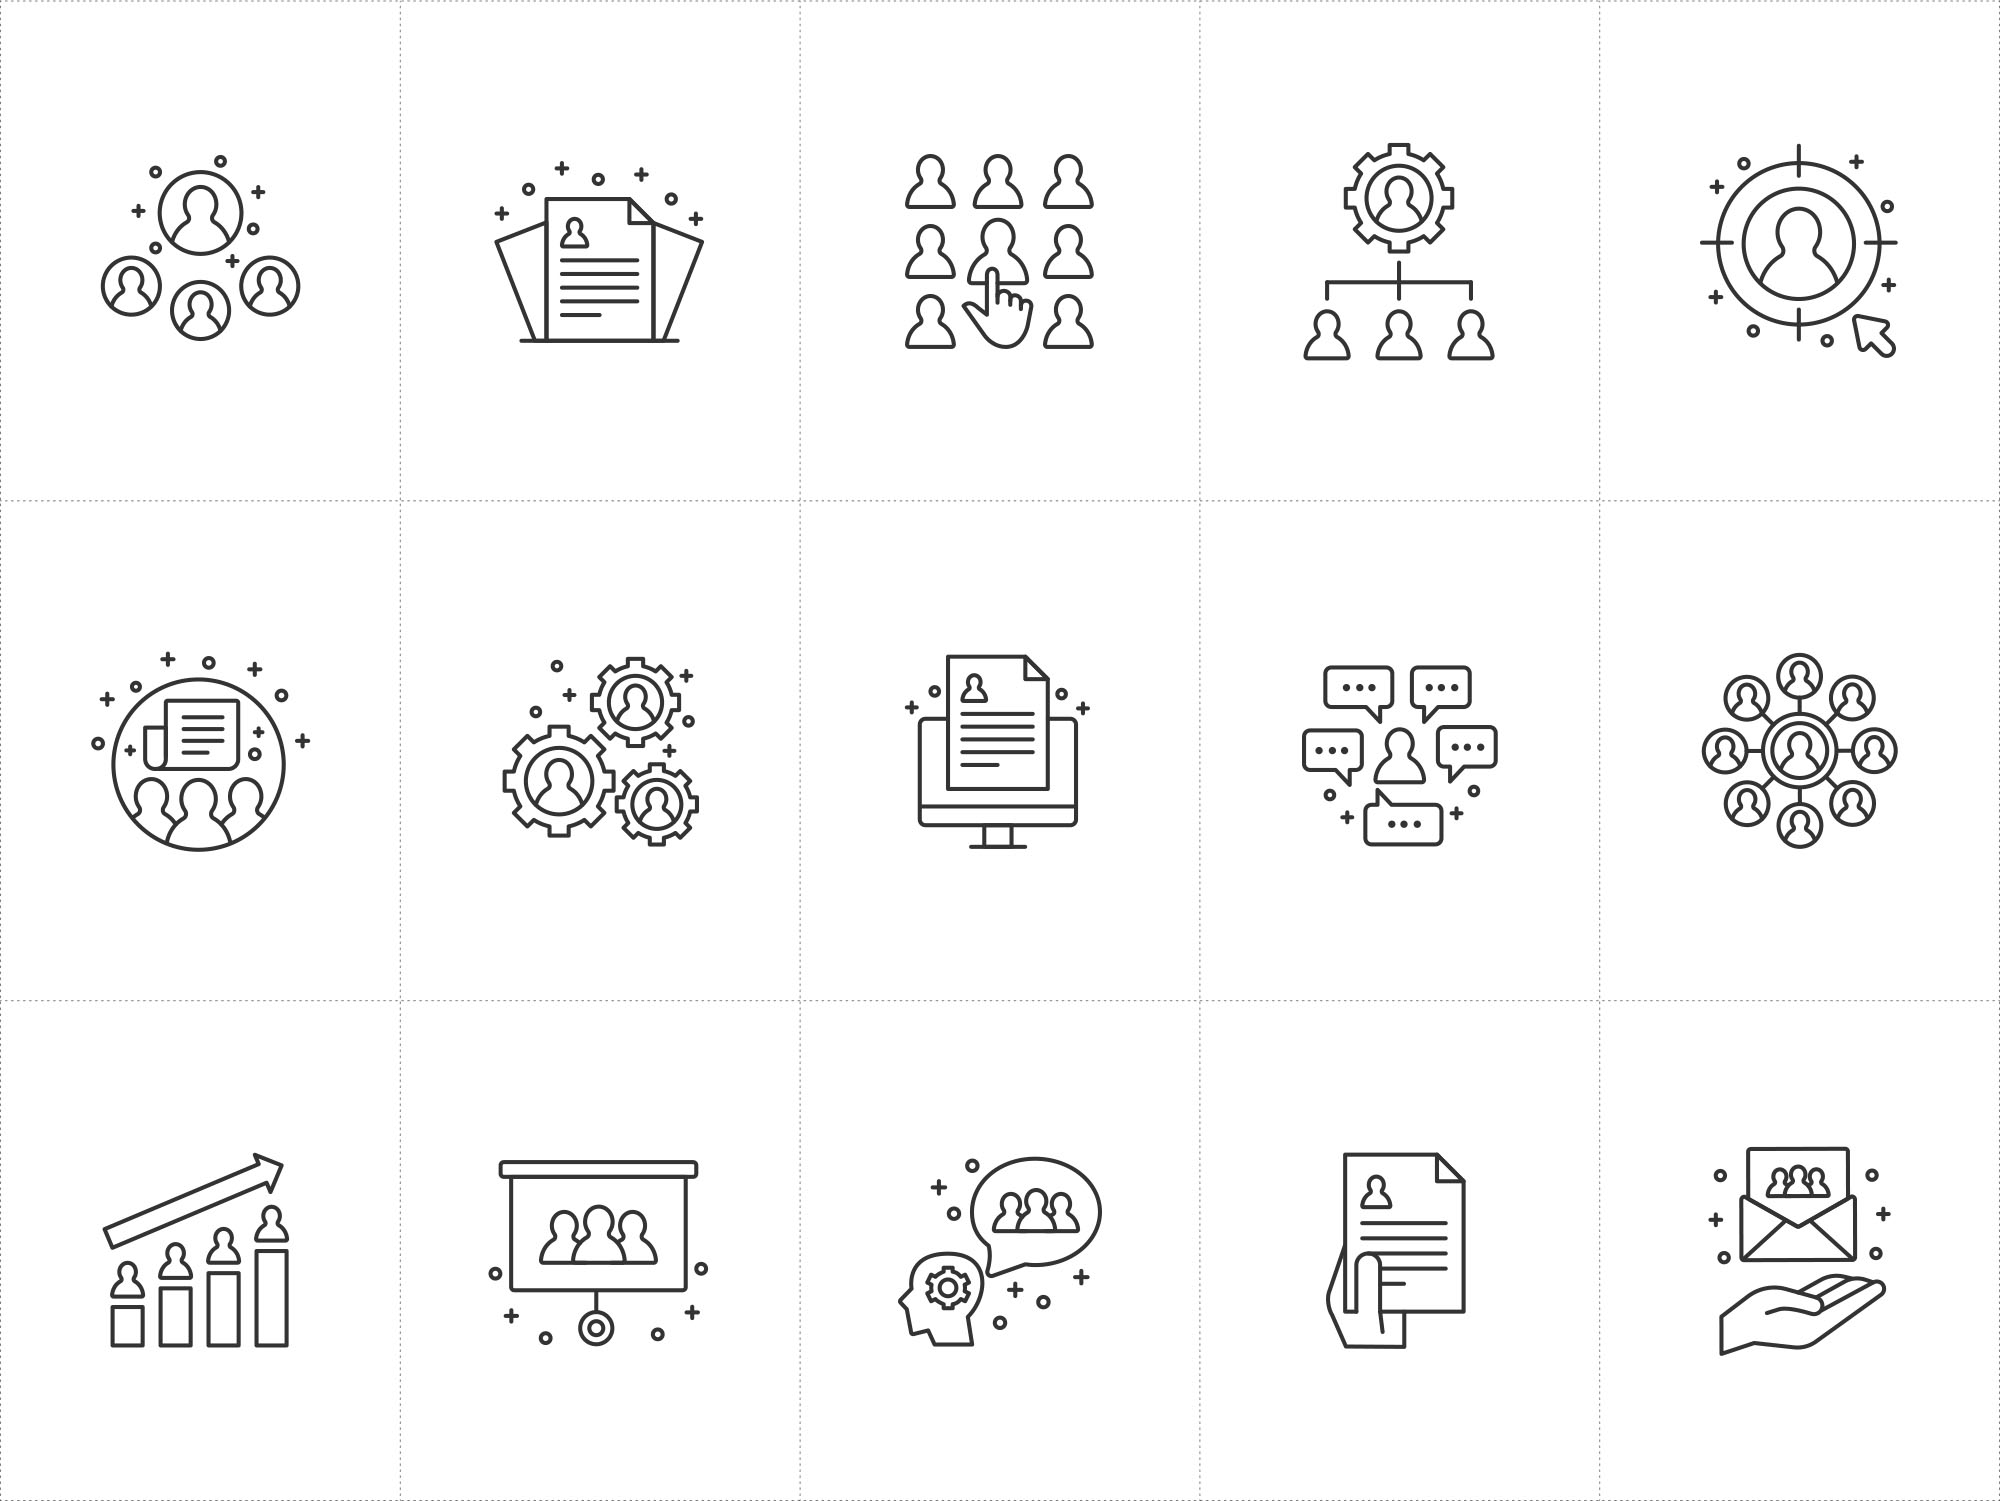 人力资源主题矢量图标素材 Human Resources Icons插图